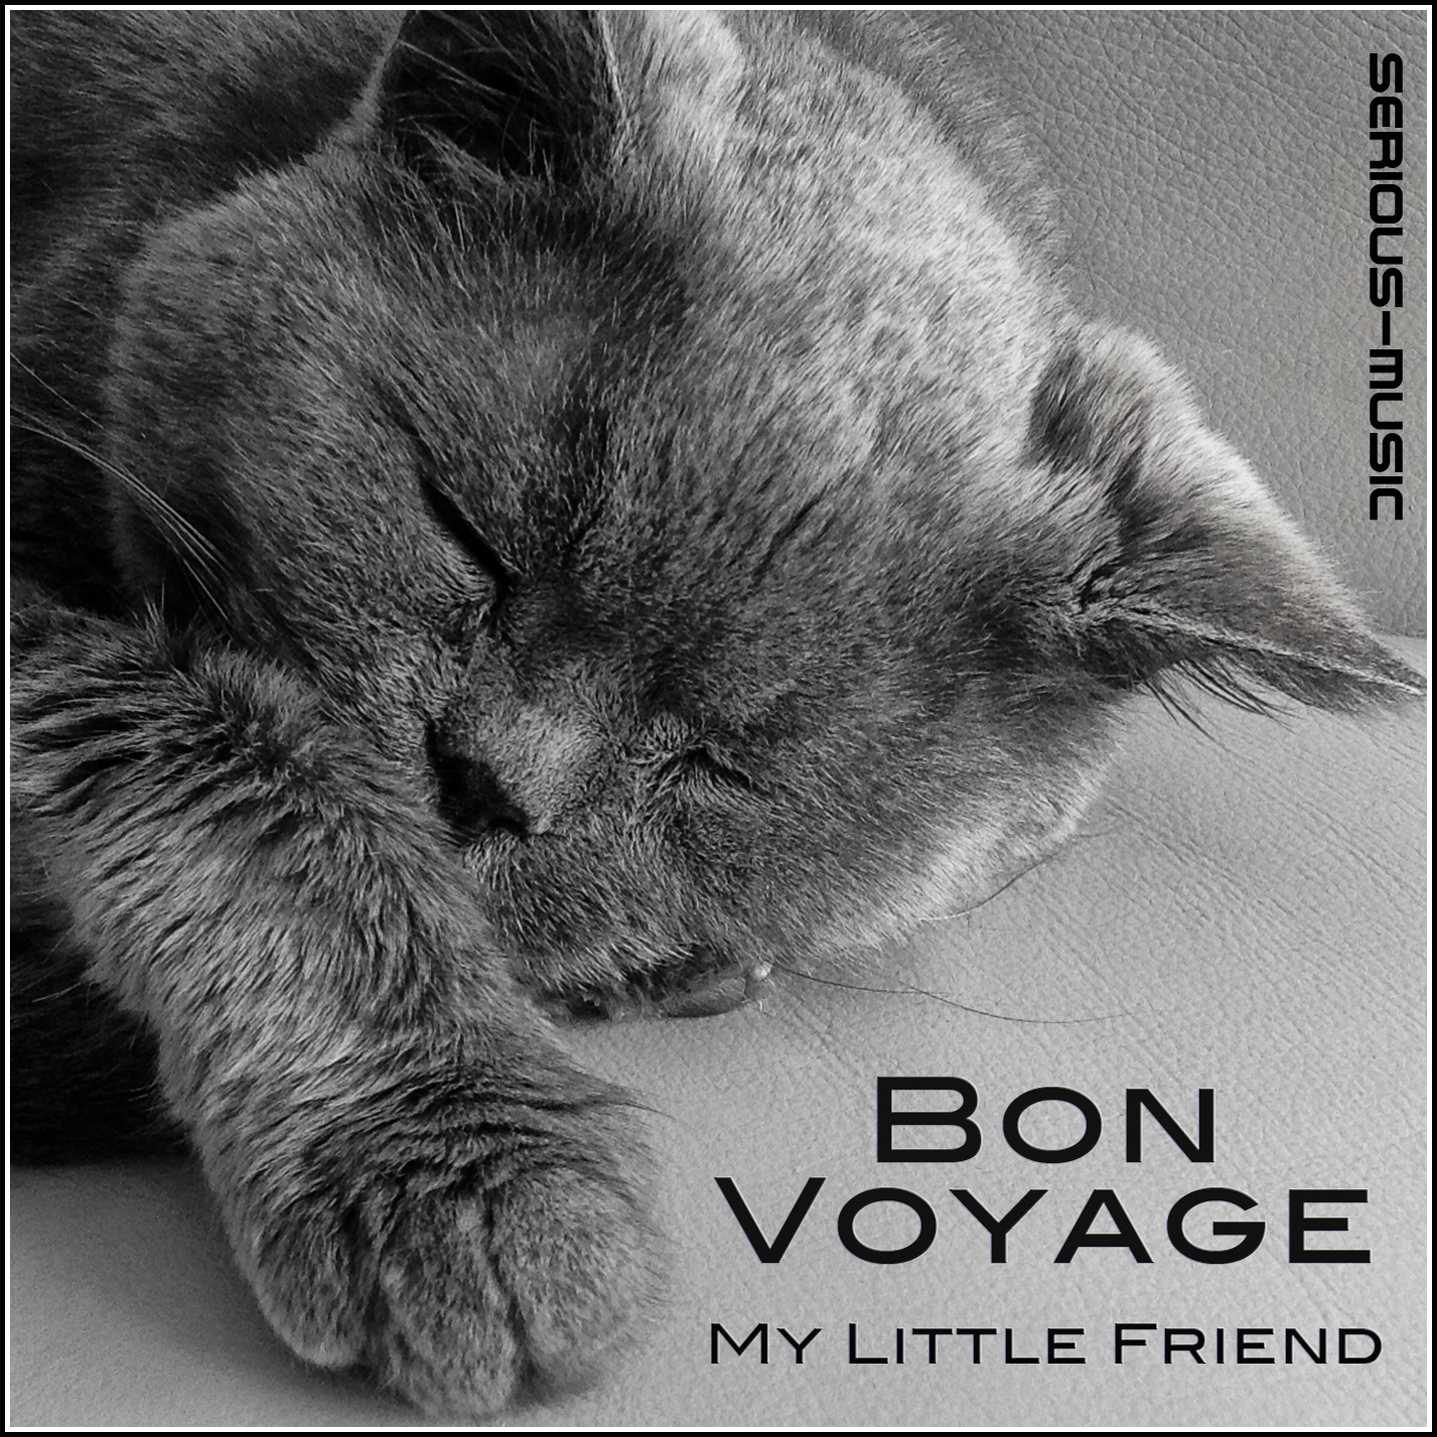 Bon Voyage My Little Friend - Album INTROSPECTIVE